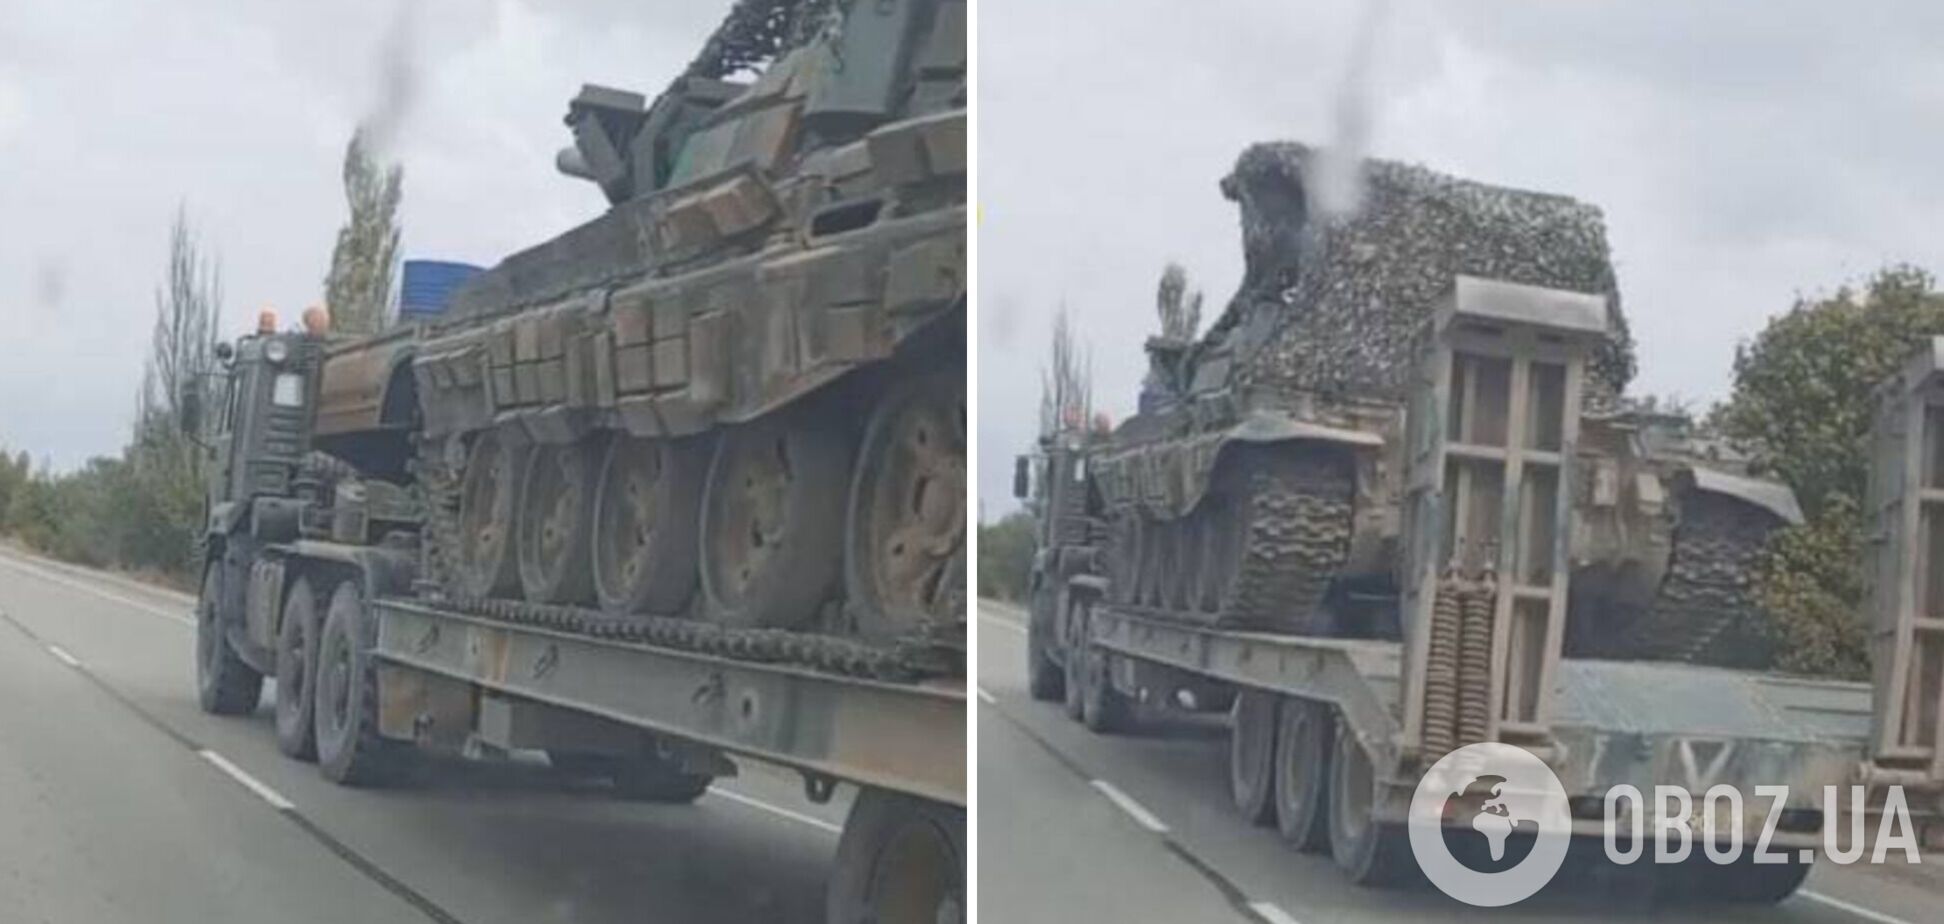 Партизаны 'Атеш' зафиксировали опрокидывание военной техники РФ из Крыма в Херсонскую область. Видео